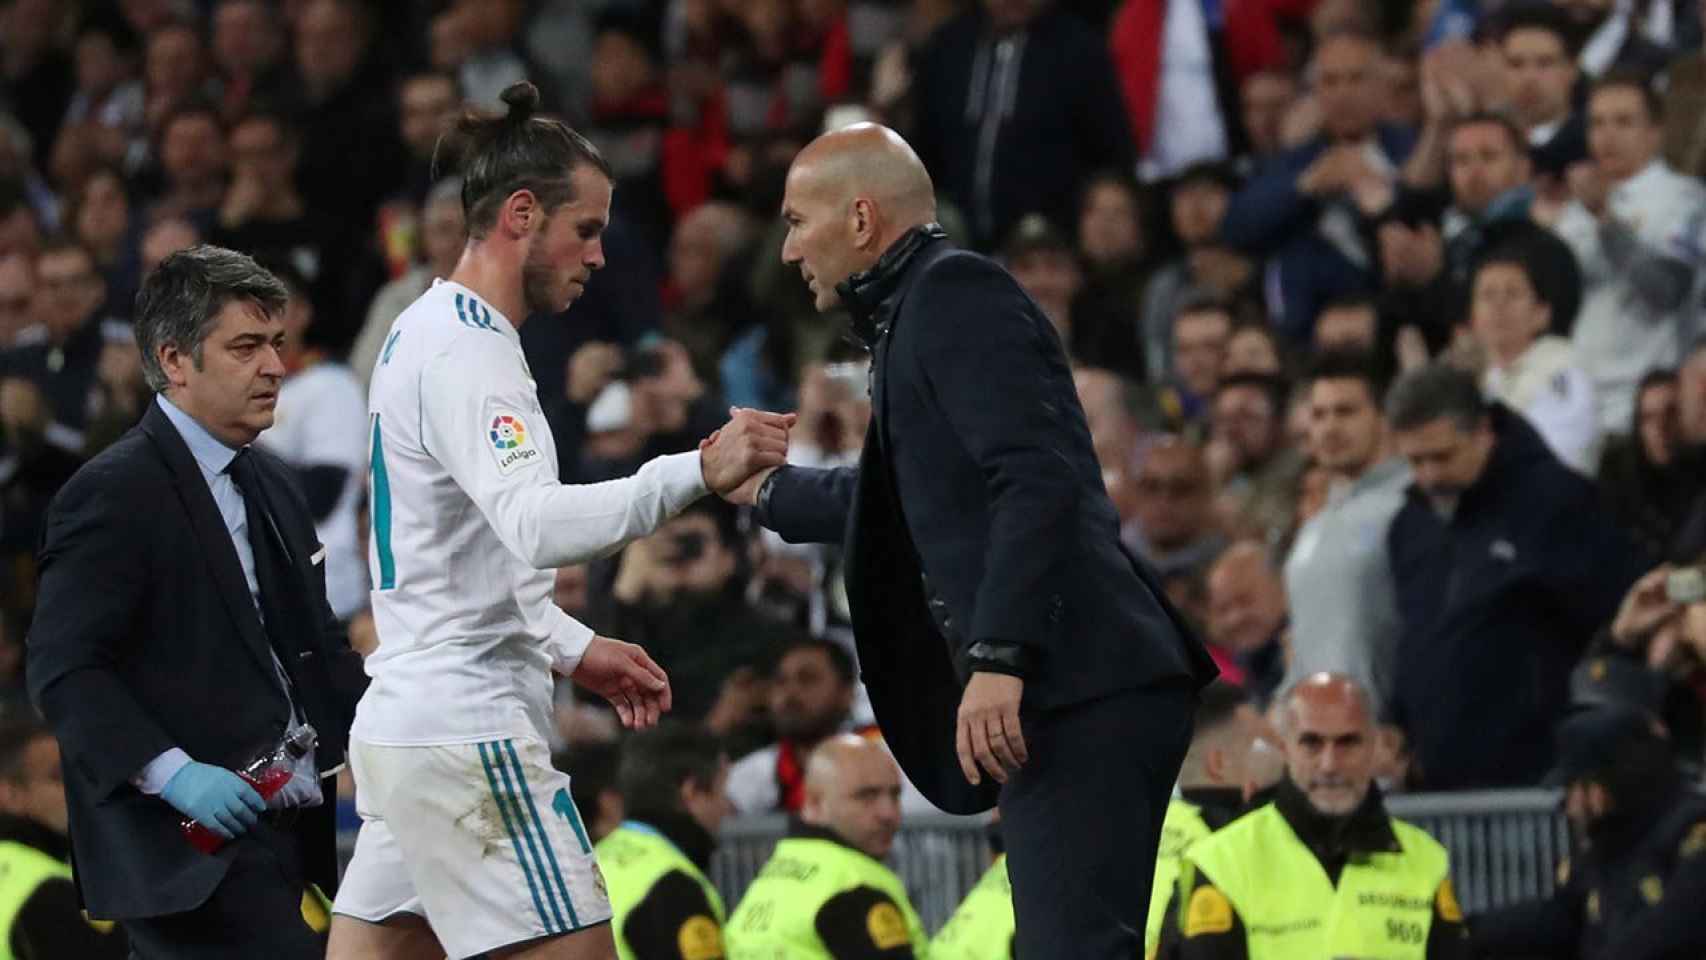 Zidane y Bale en una imagen de archivo con el Madrid / EFE